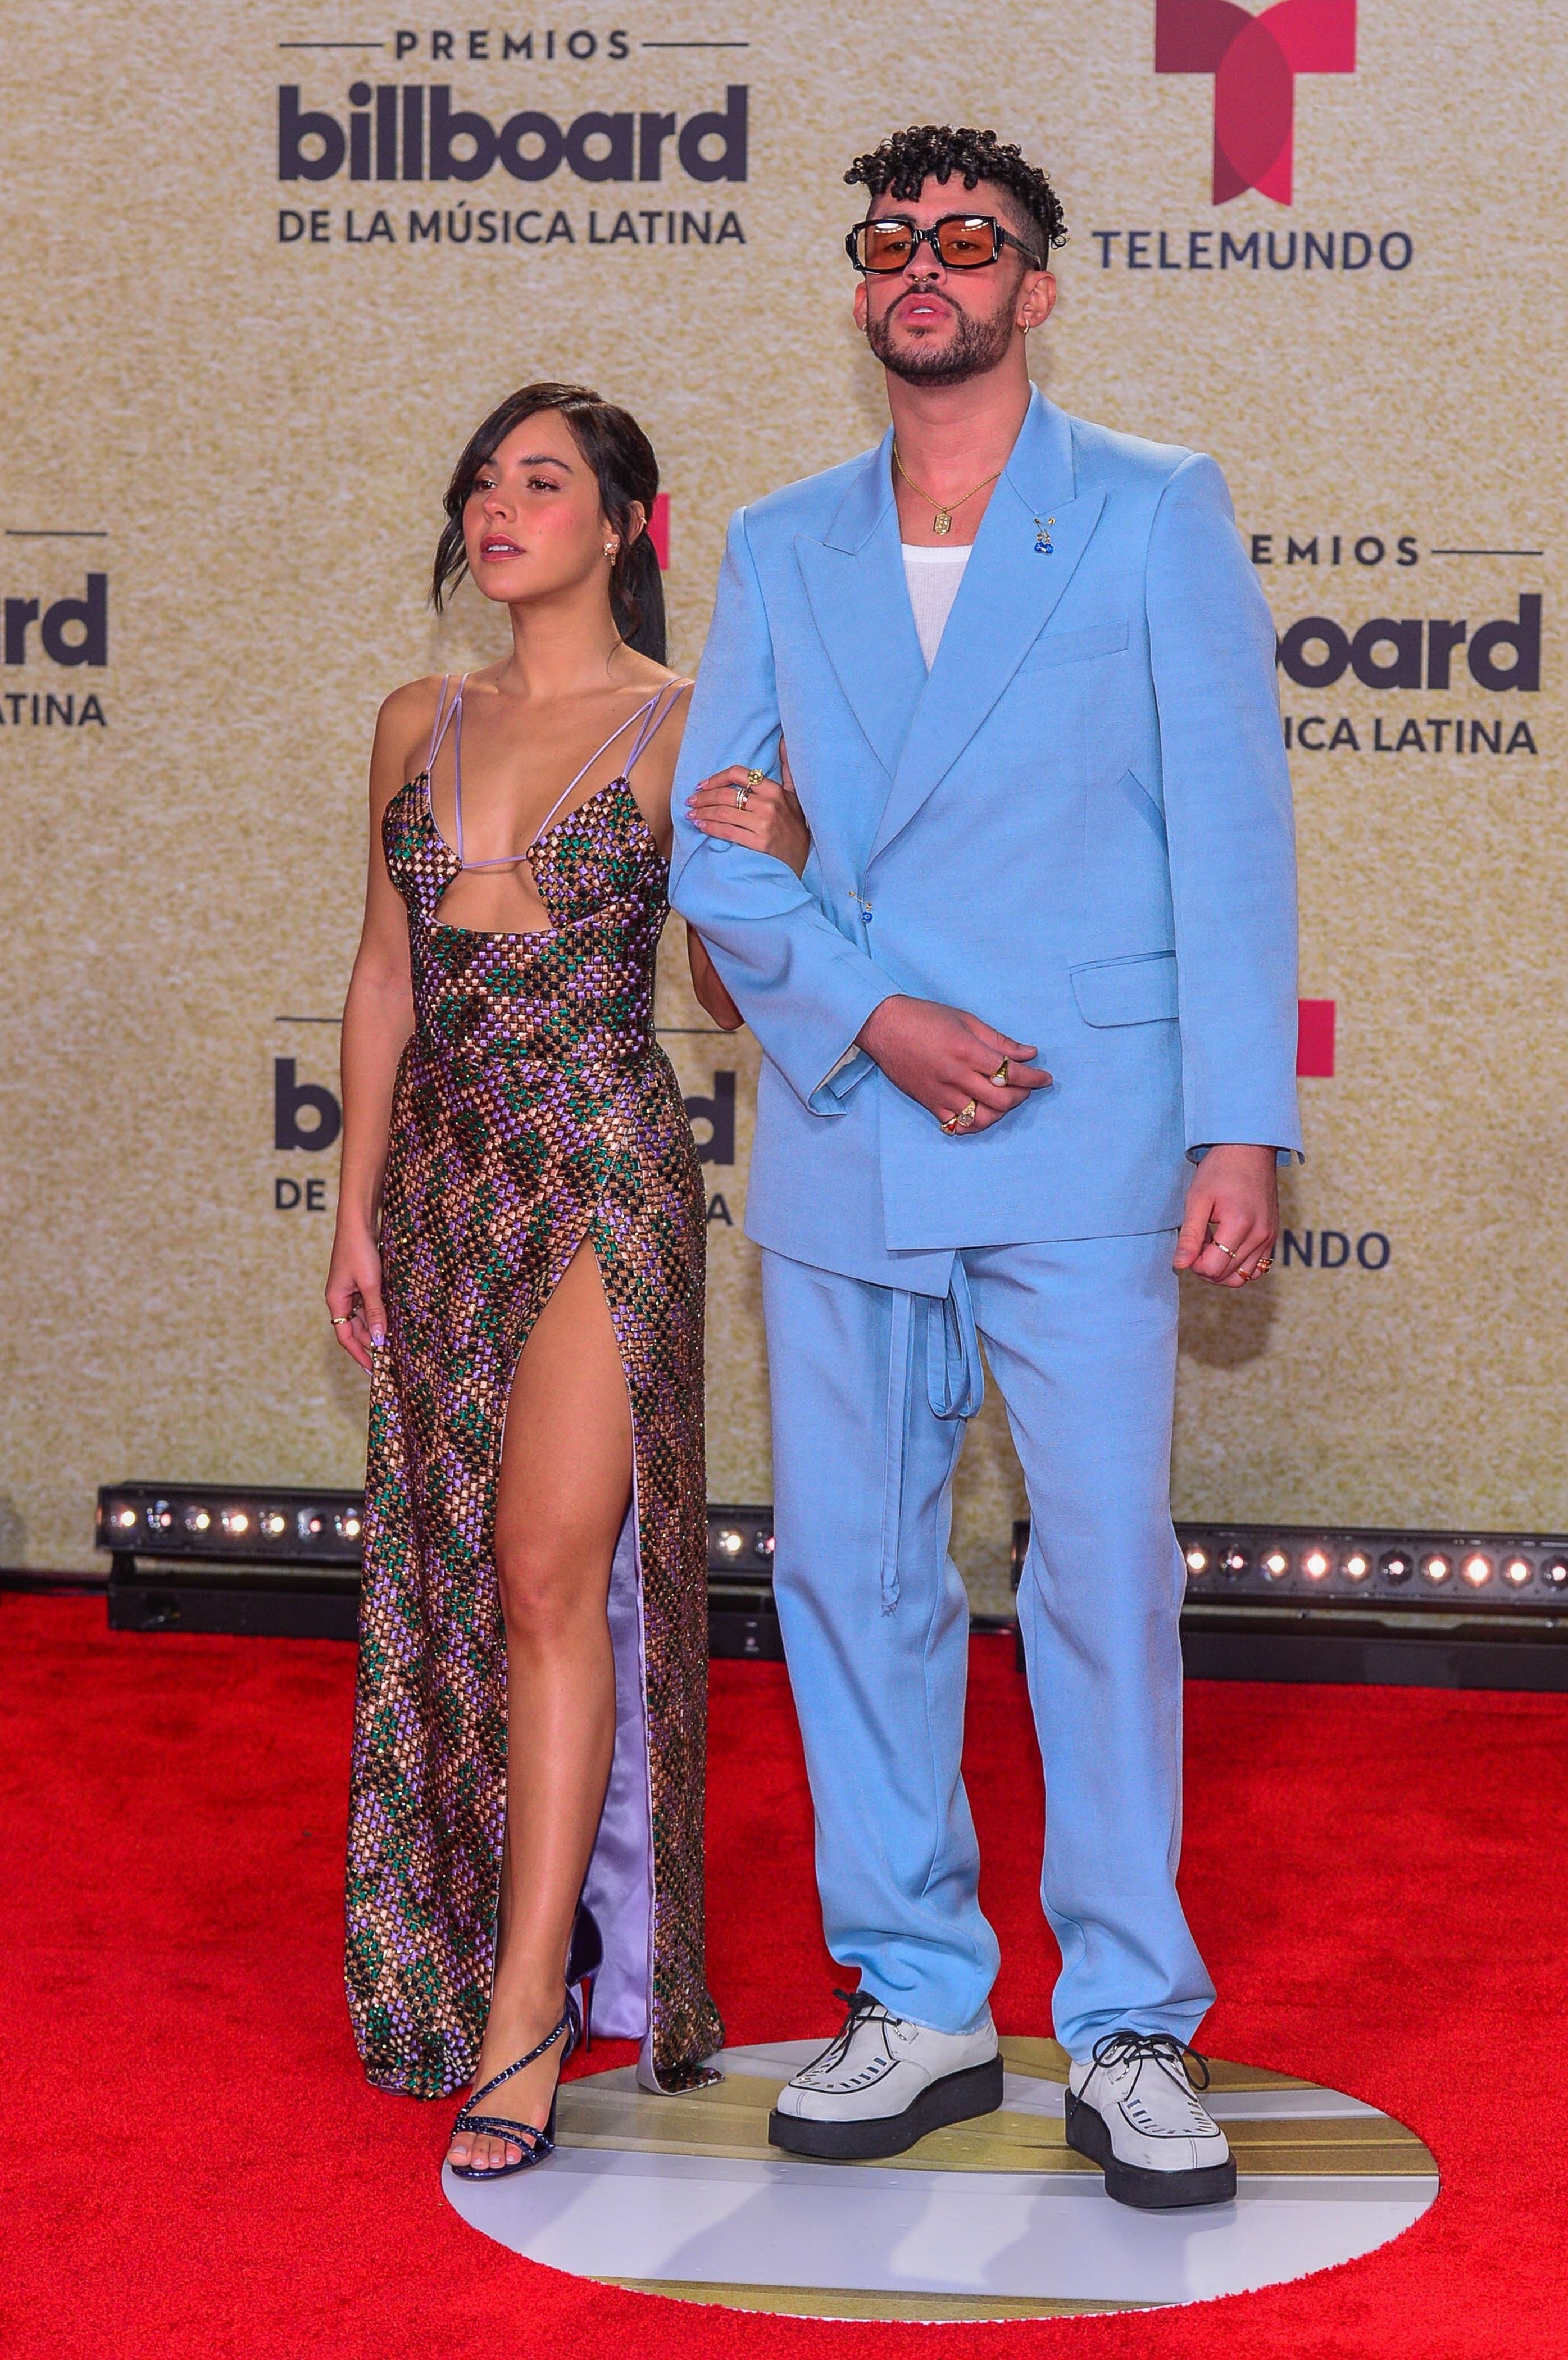 El cantante puertorriqueño Bad Bunny y su novia Gabriela Berlingeri posan en la alfombra roja de los Premios Billboard de la Música Latina este jueves en el Watsco Center en Miami, Florida (EE.UU.). EFE/Giorgio Viera